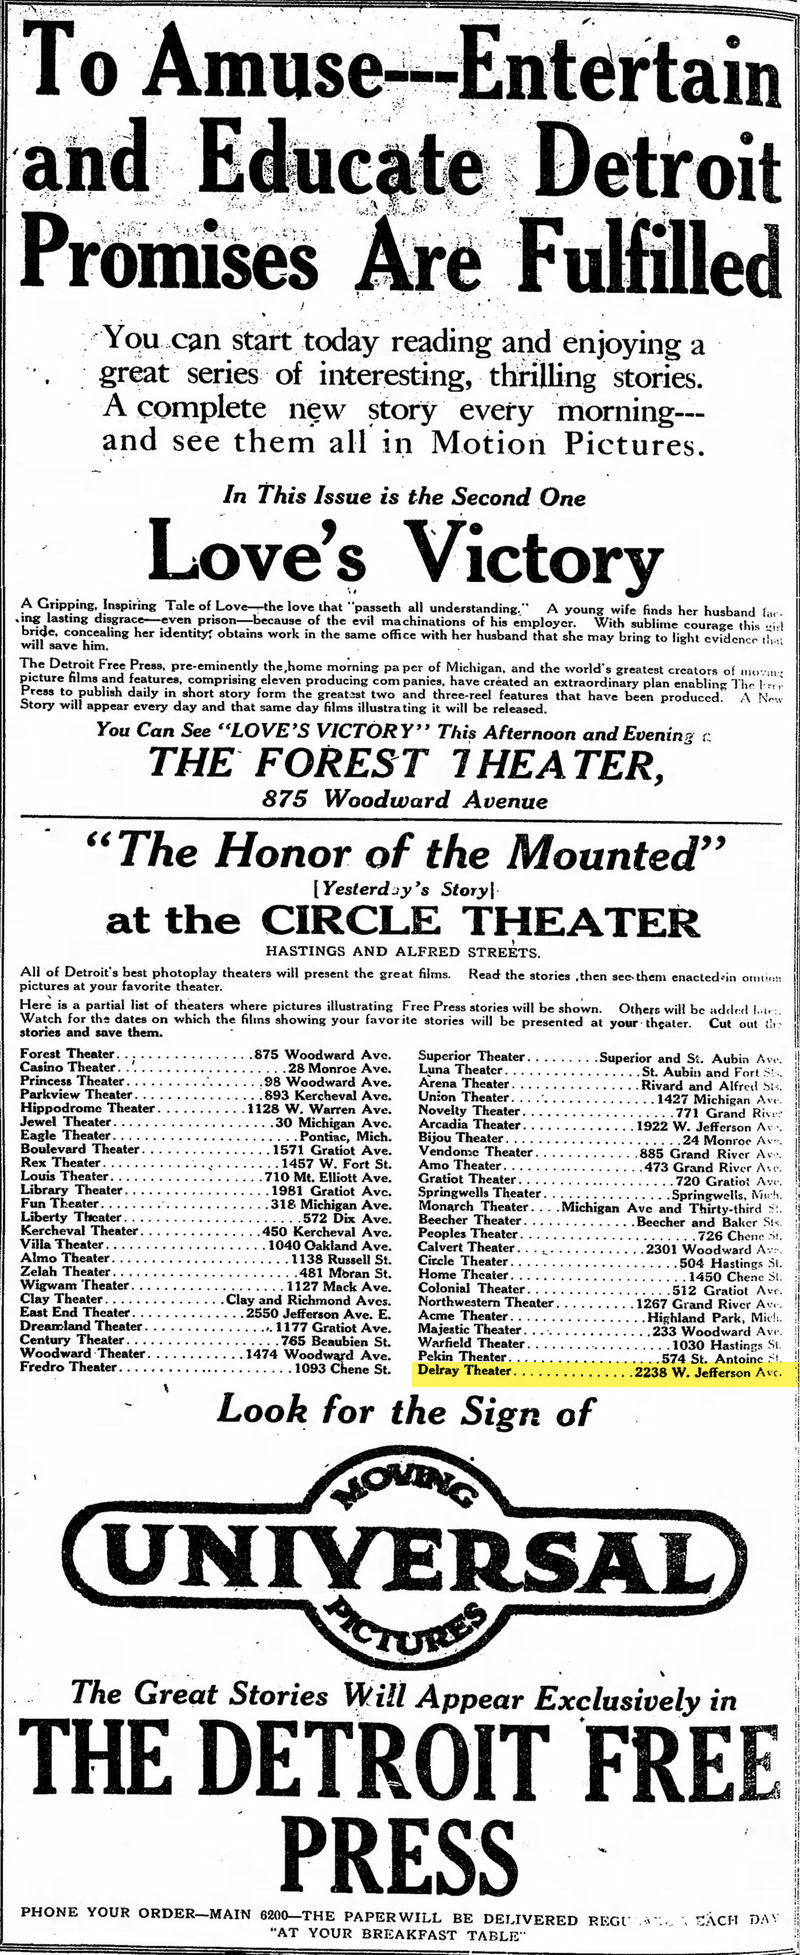 Delray Theatre - Feb 24 1914 Ad